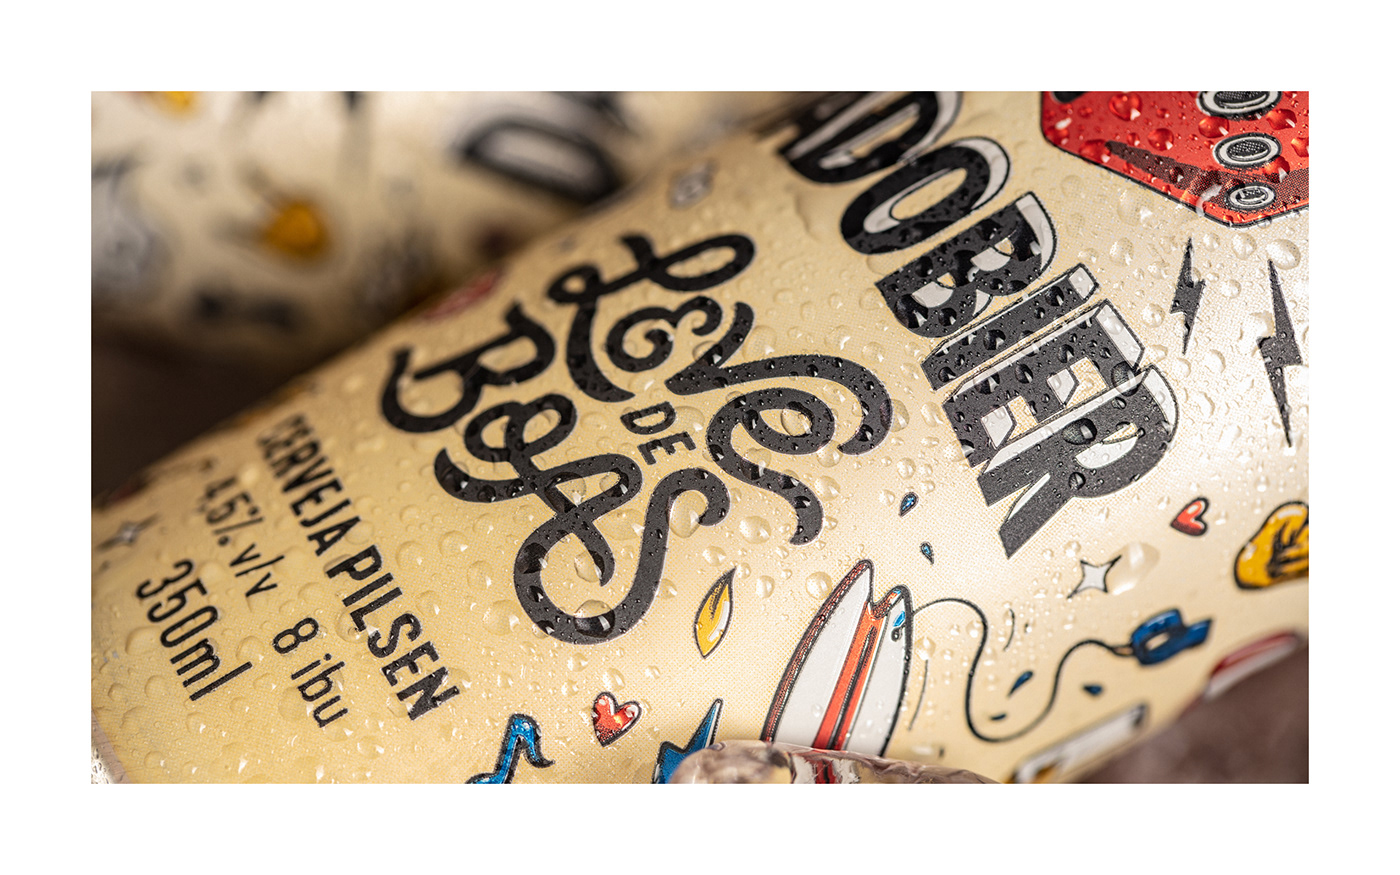 beer Label Packaging packaging design graphic design  ILLUSTRATION  Drawing  craft embalagem beer can